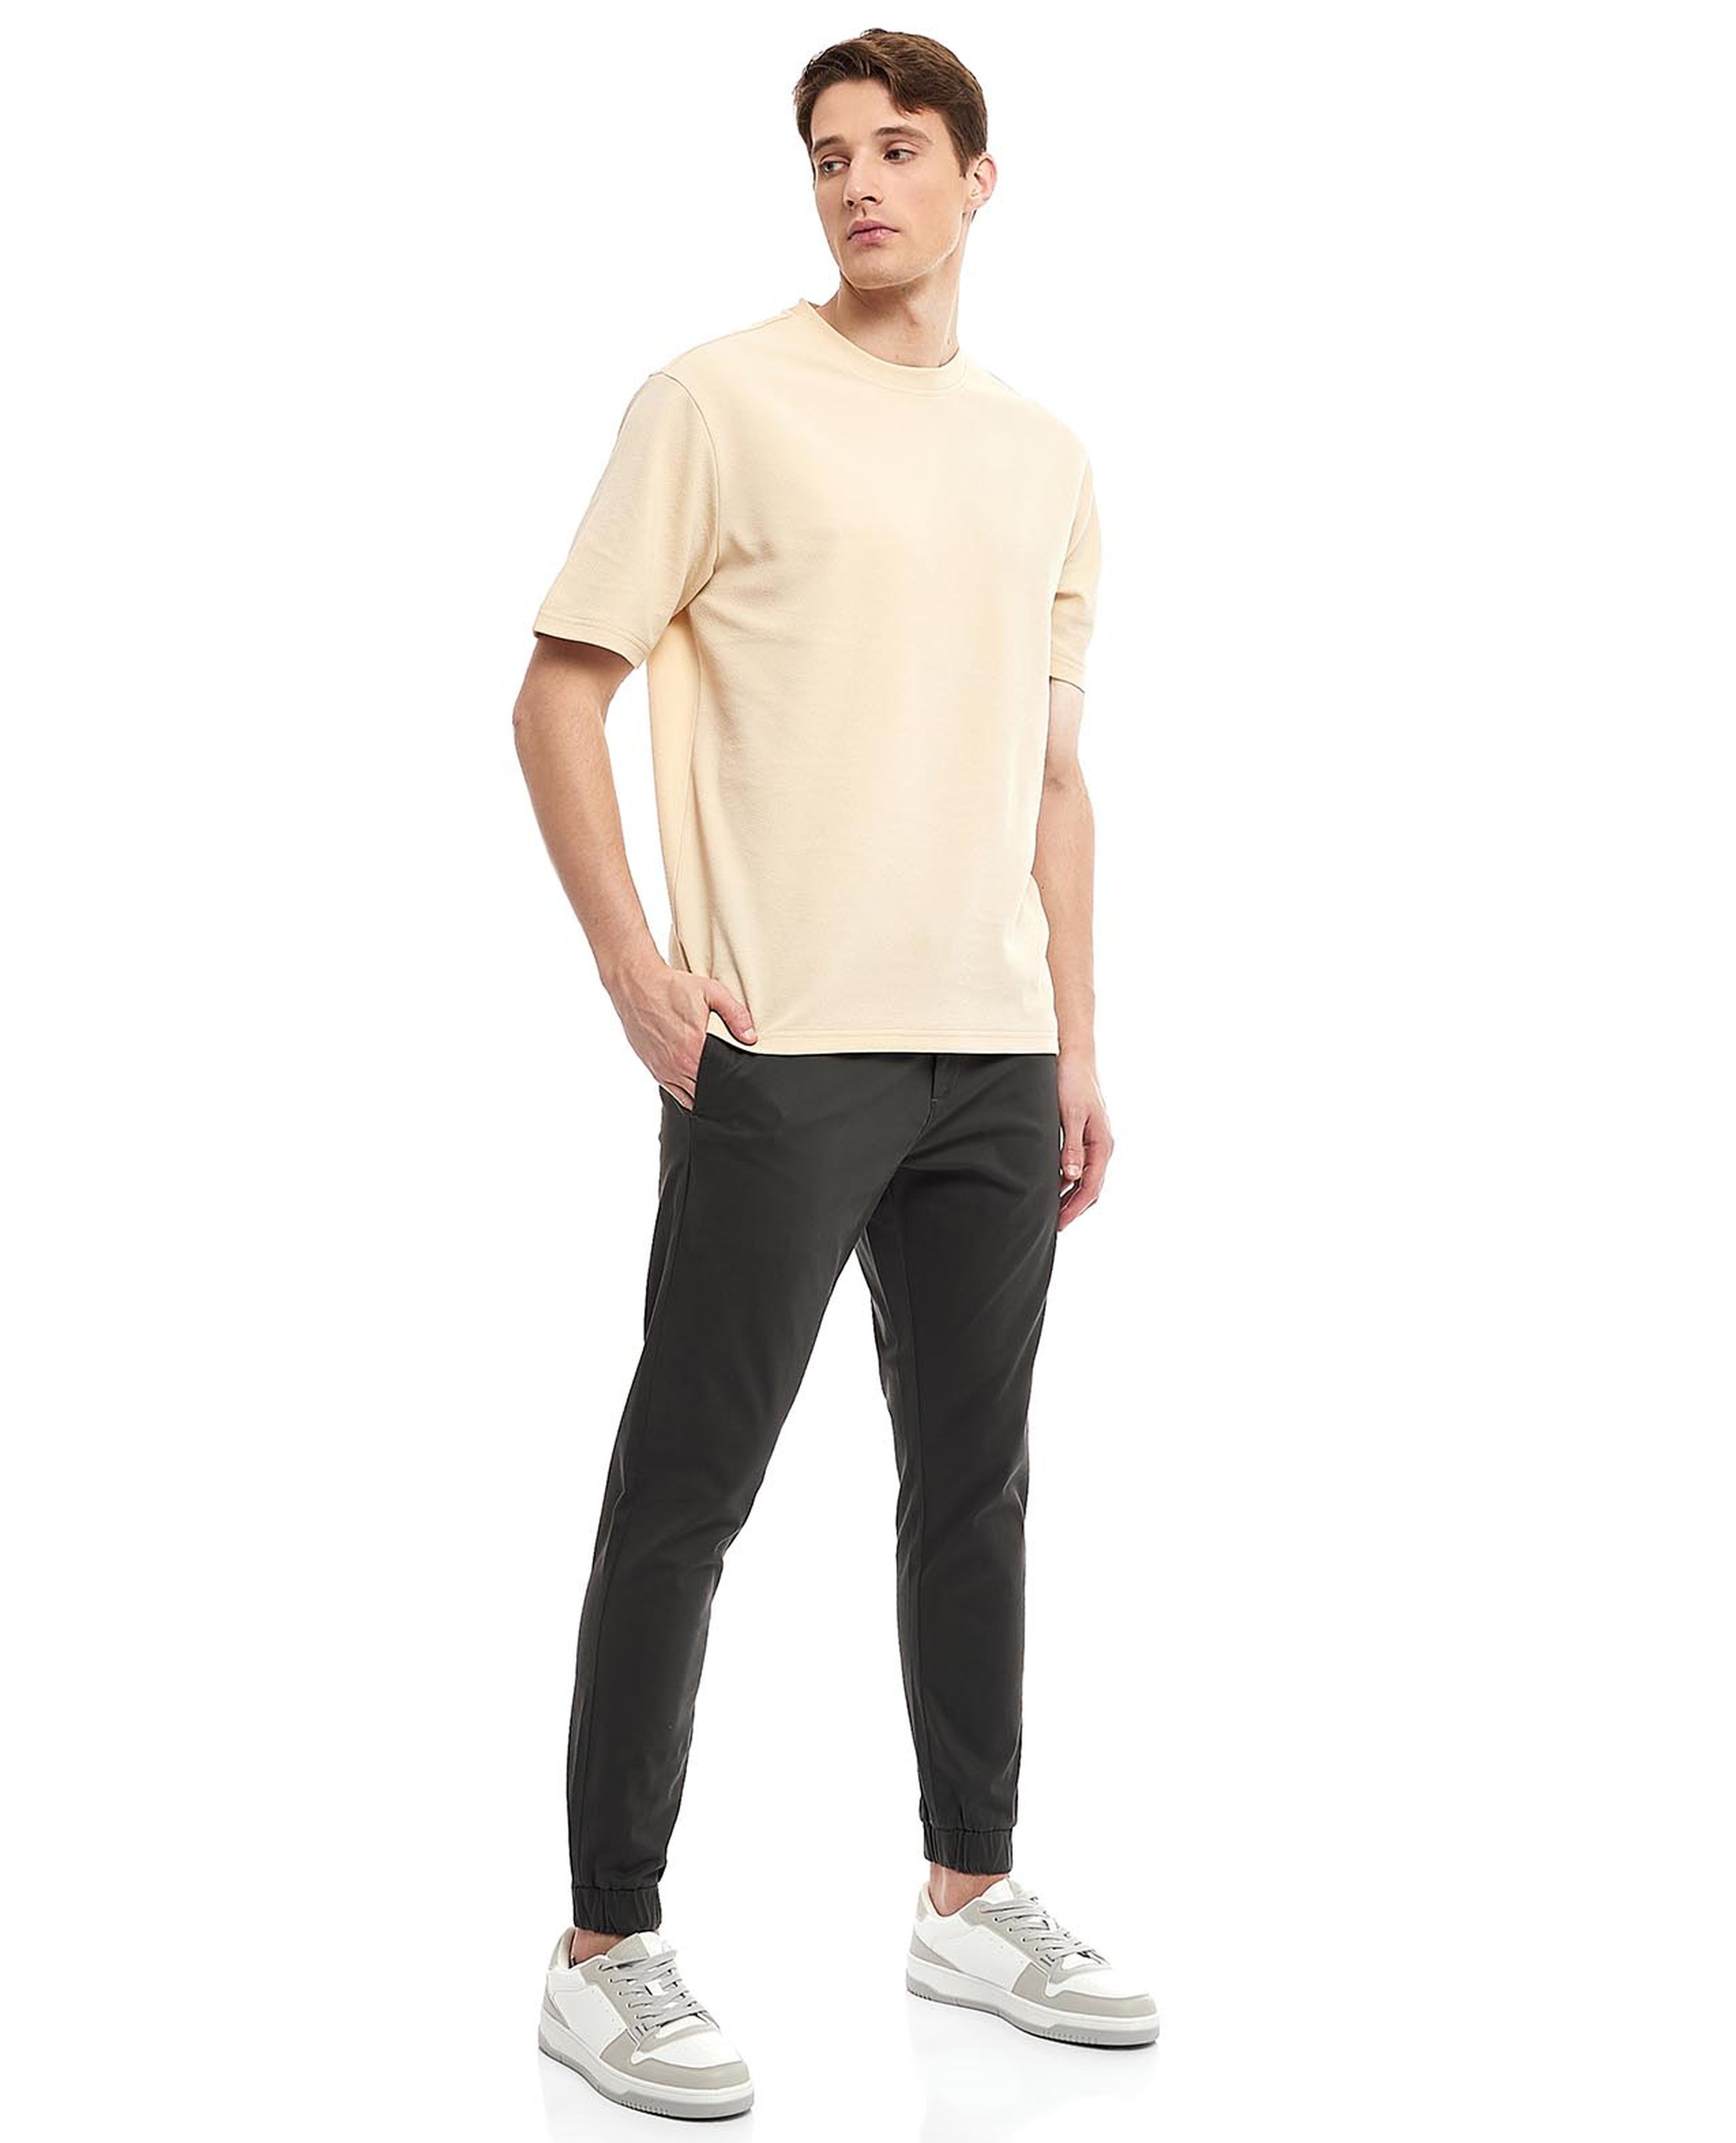 Shop Pants Collection for Men Online